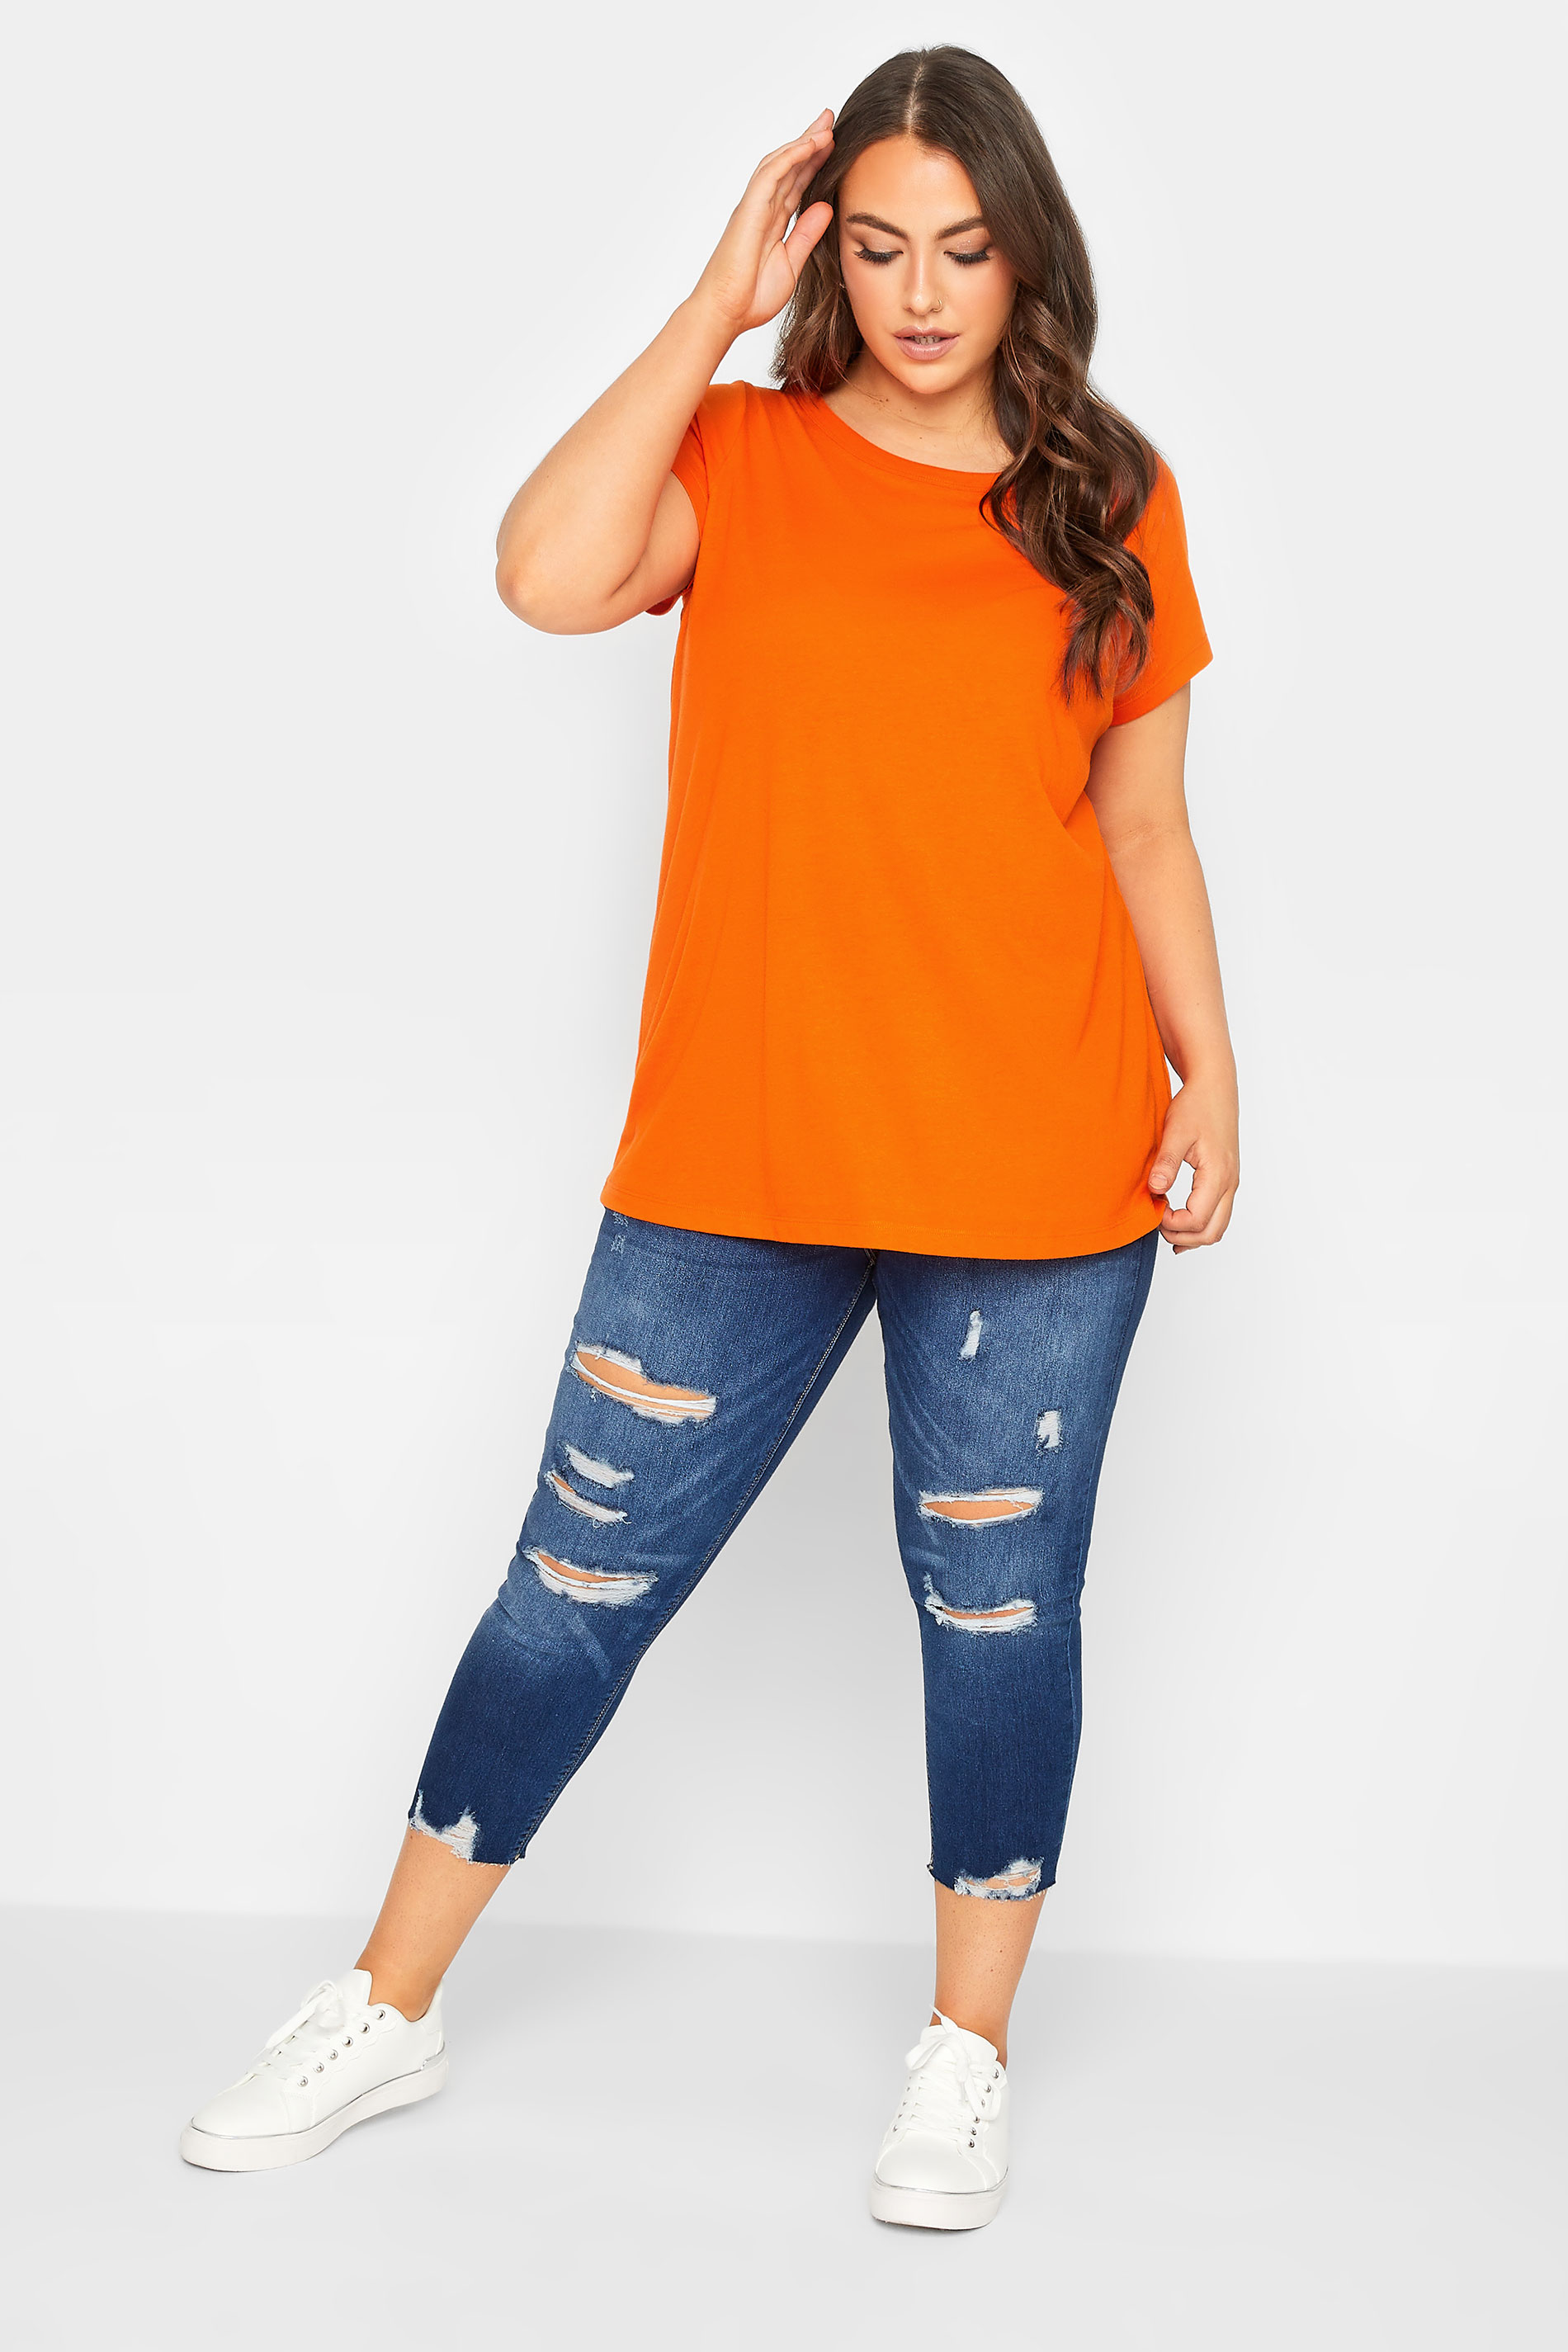 YOURS Curve Plus Size Orange Basic T-Shirt | Yours Clothing  2